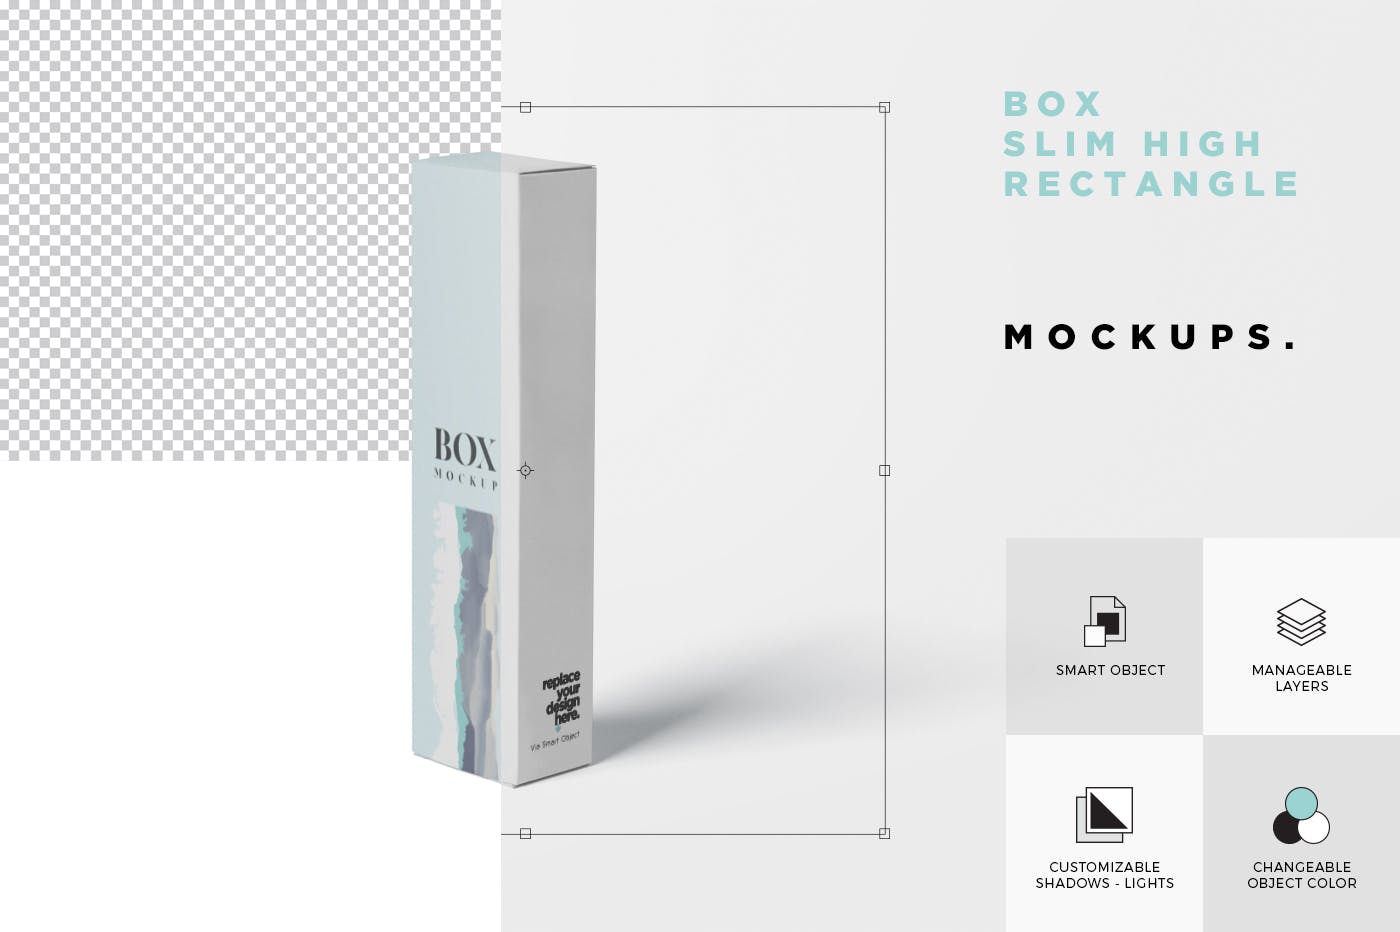 长条形化妆品/护肤品包装纸盒设计图样机 Box Mockup – Slim High Rectangle Shape插图5